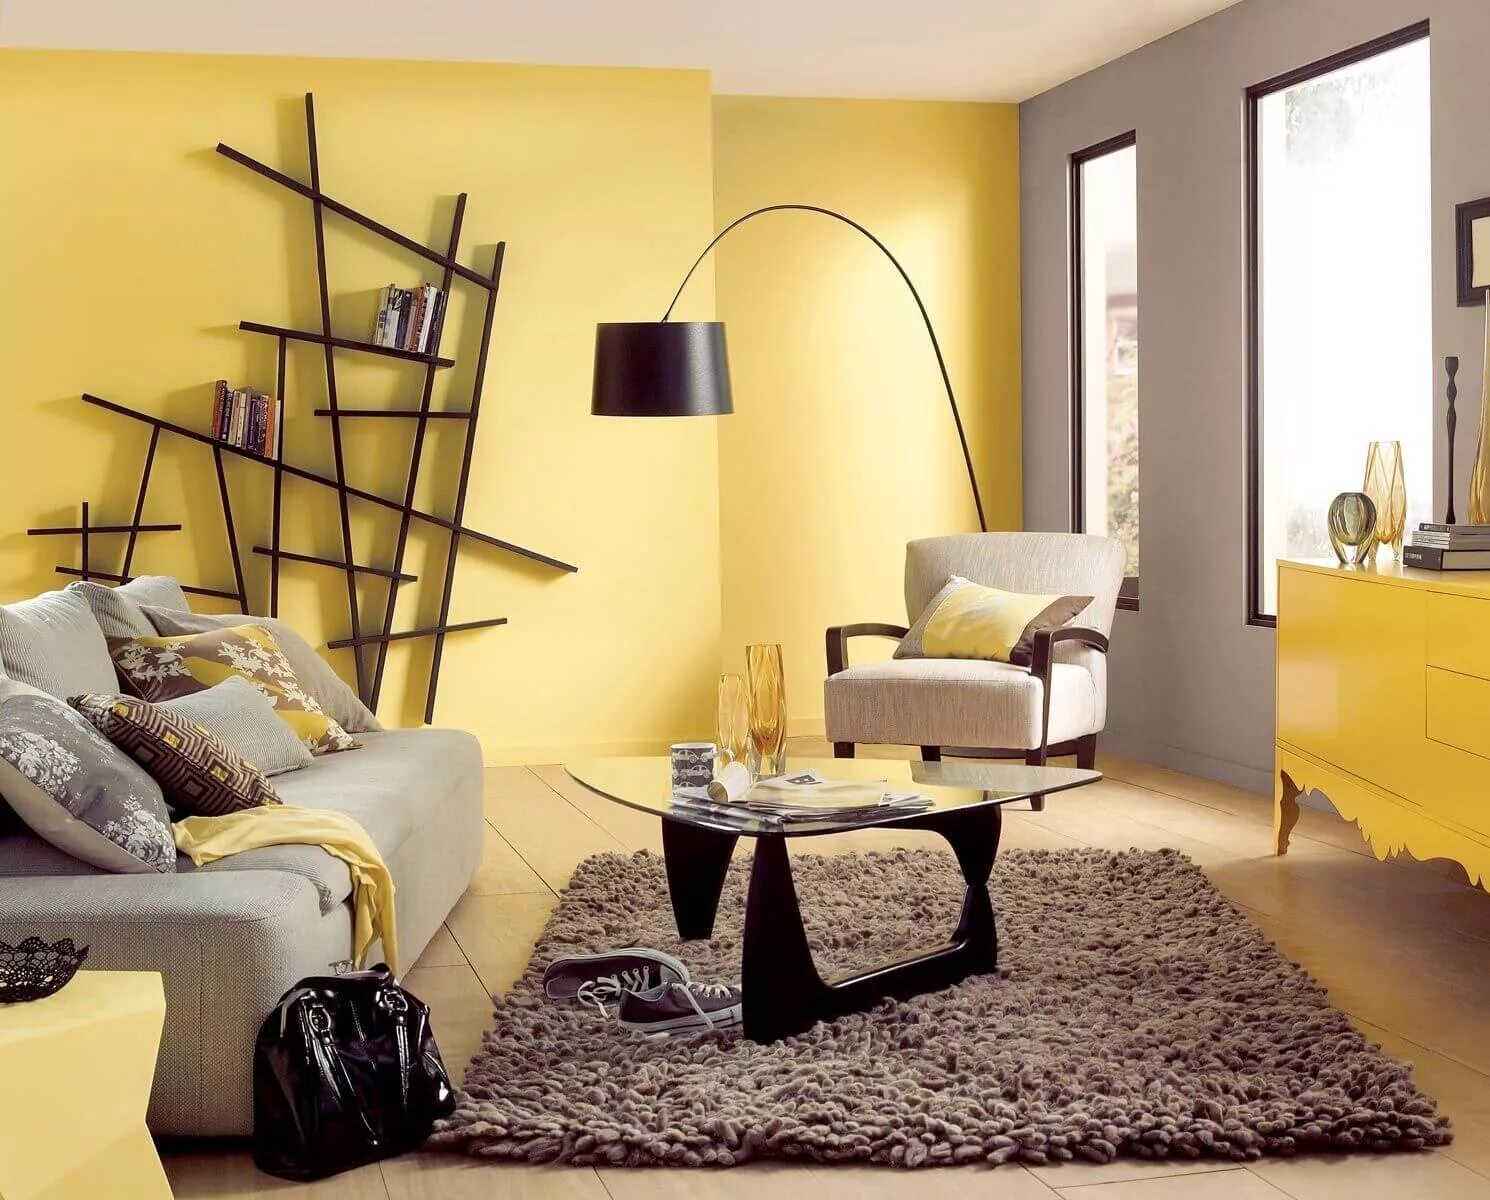 Цвет в интерьере квартиры. Желтый цвет в интерьере. Желтые стены в интерьере. Цветовые решения в интерьере. Гостиная в желтом цвете.